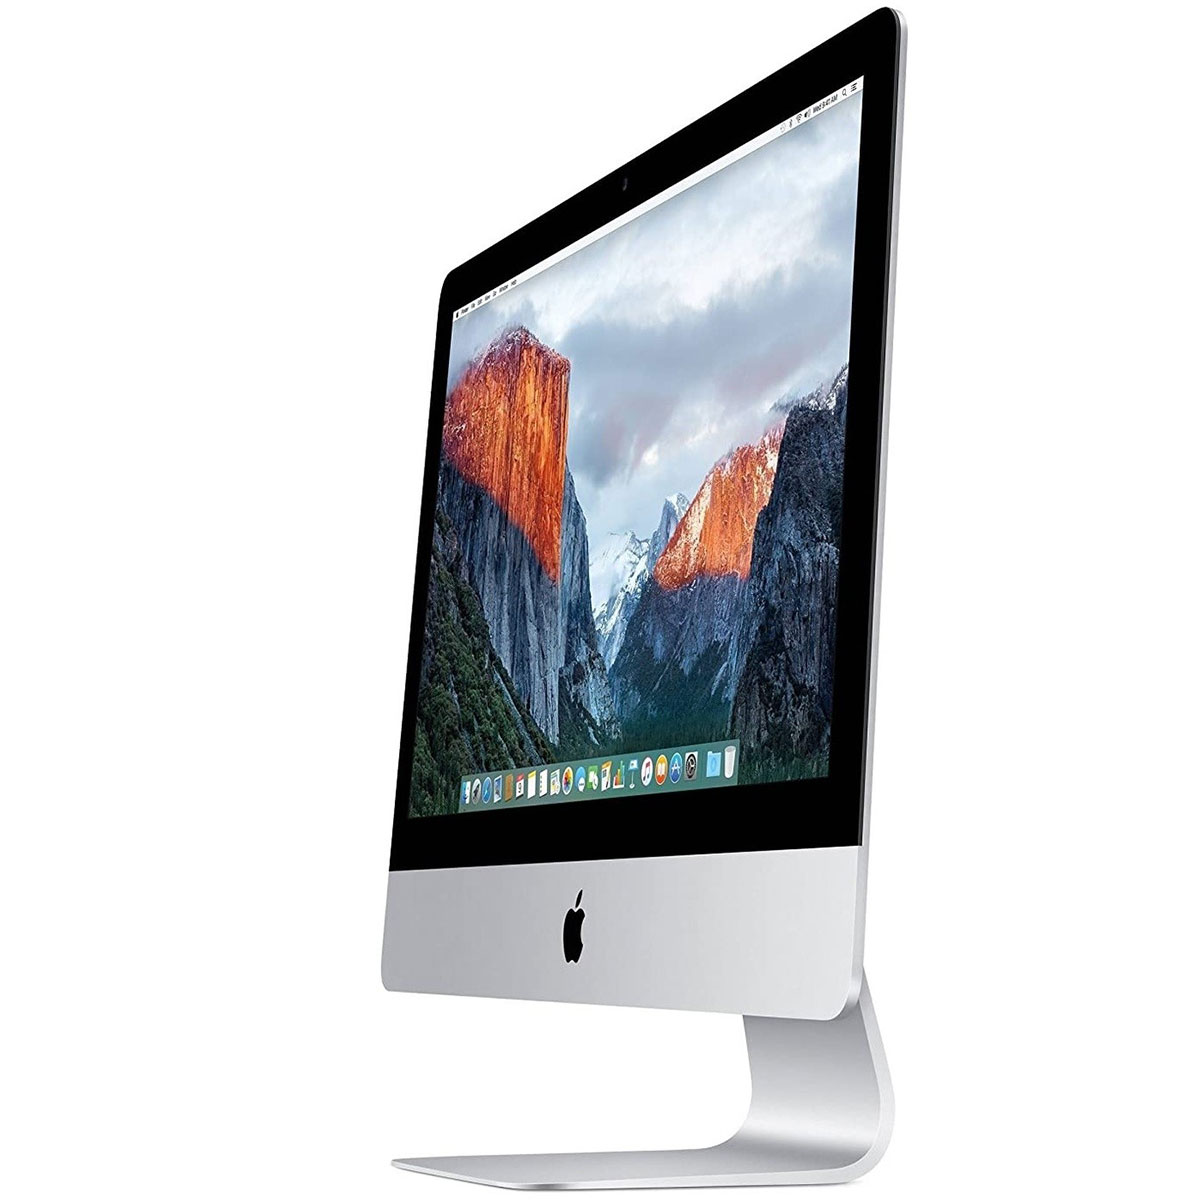 iMac core i7 HDD 1TB